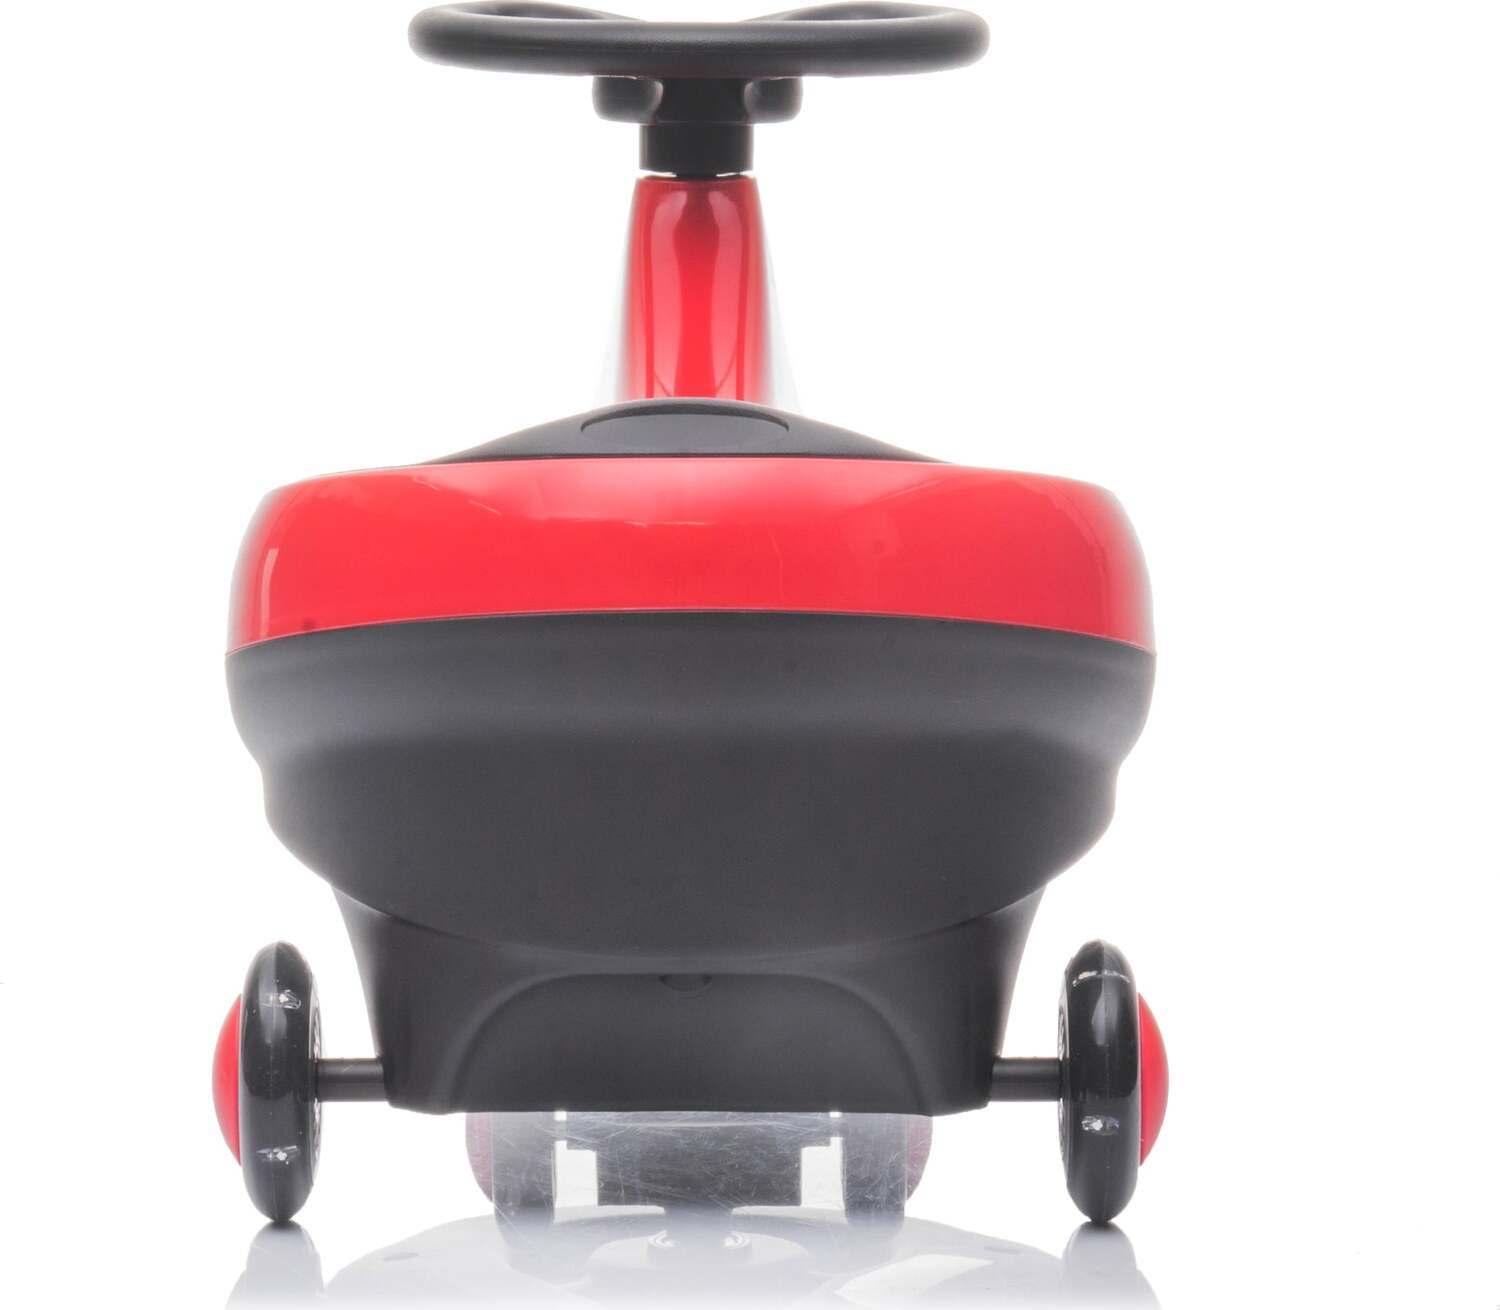 Freddo Toys Swing Car with Flashing Wheels (Red)